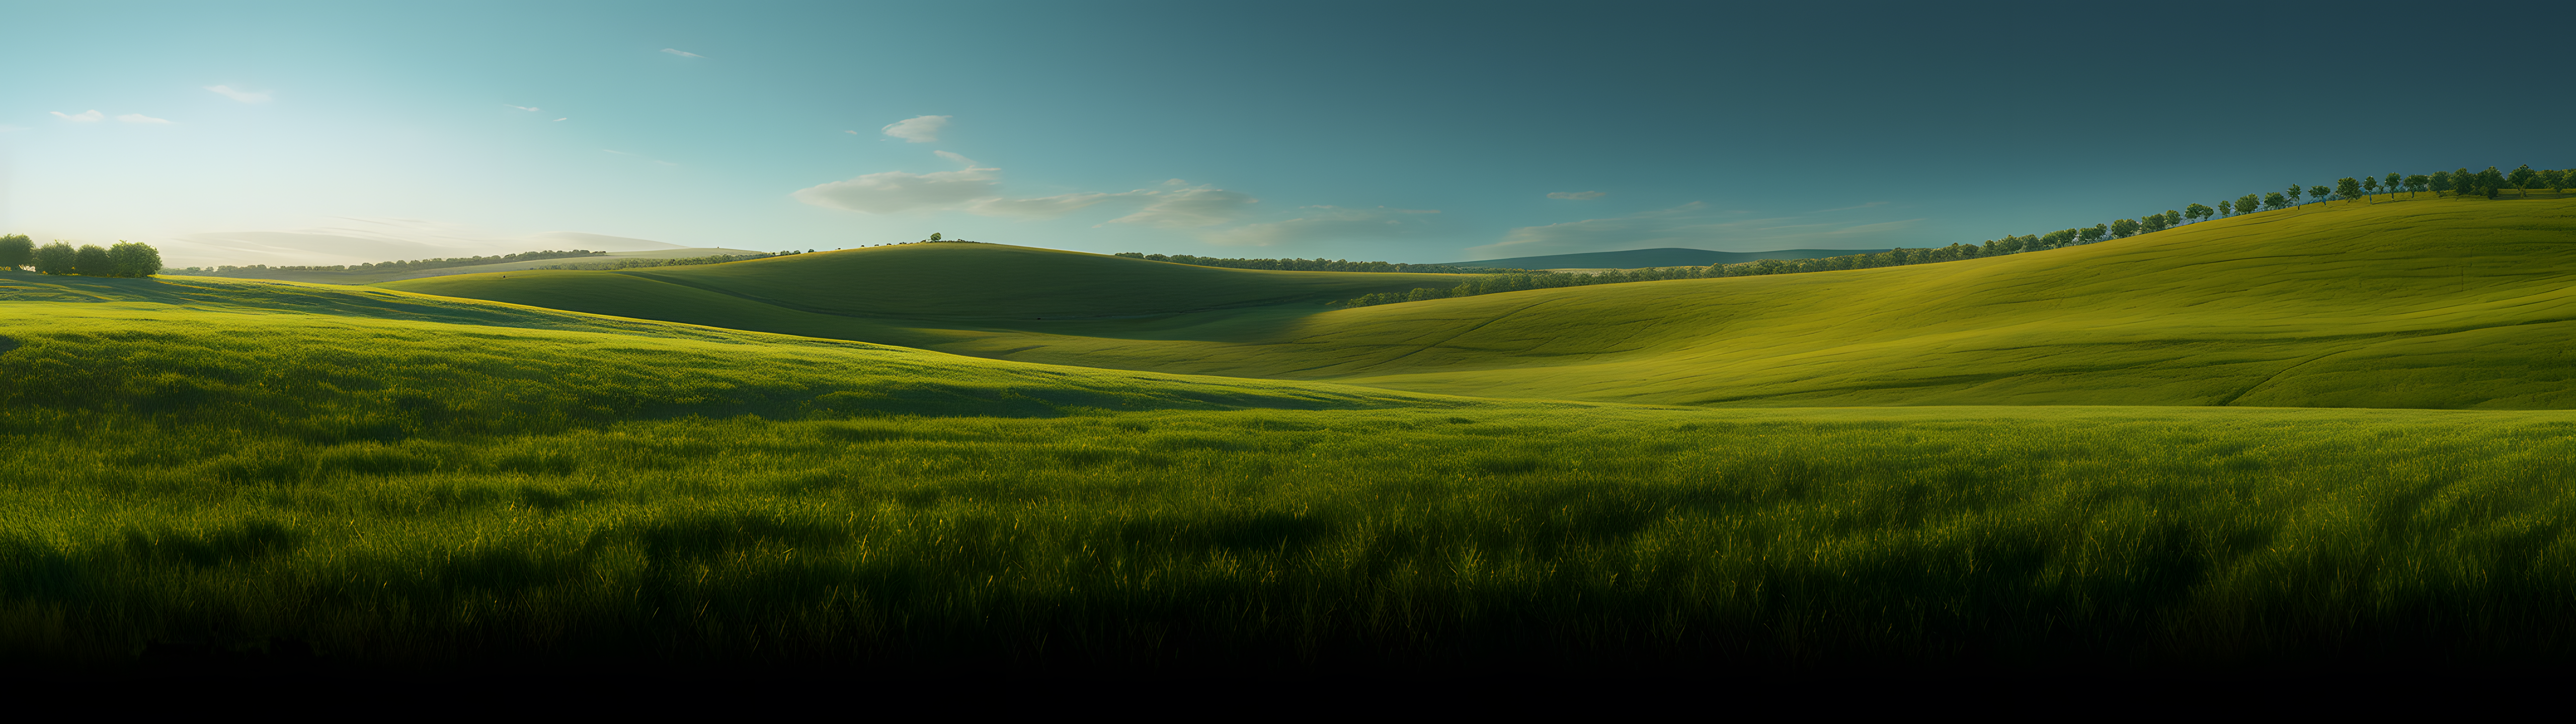 General 5120x1440 AI art grass field Windows XP bliss clouds landscape